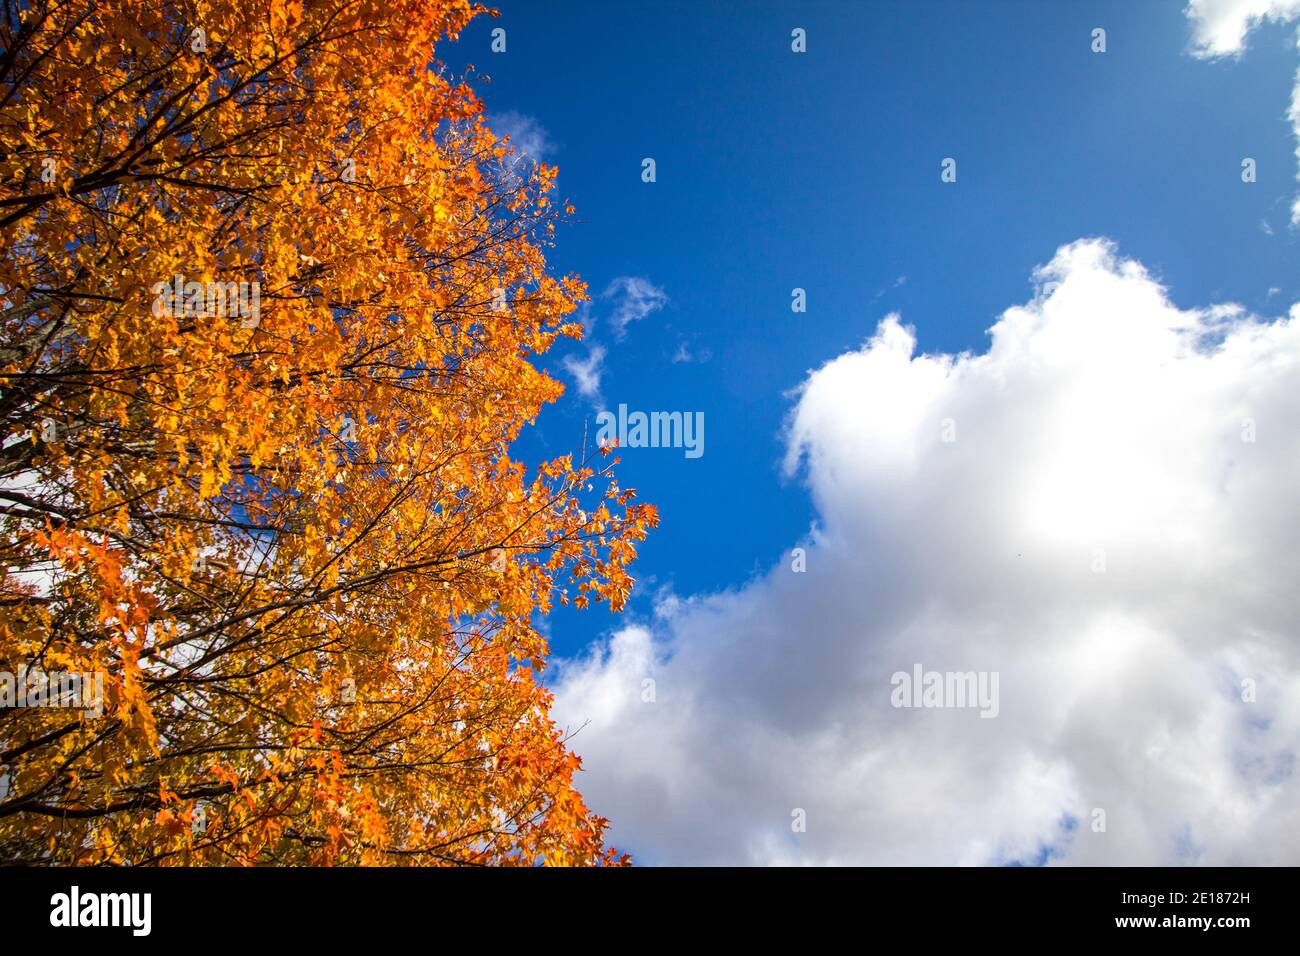 Herbstblätter in vollem Herbstlaub, die vor einer sonnigen, blauen Himmelslandschaft mit Kopierfläche stehen. Stockfoto